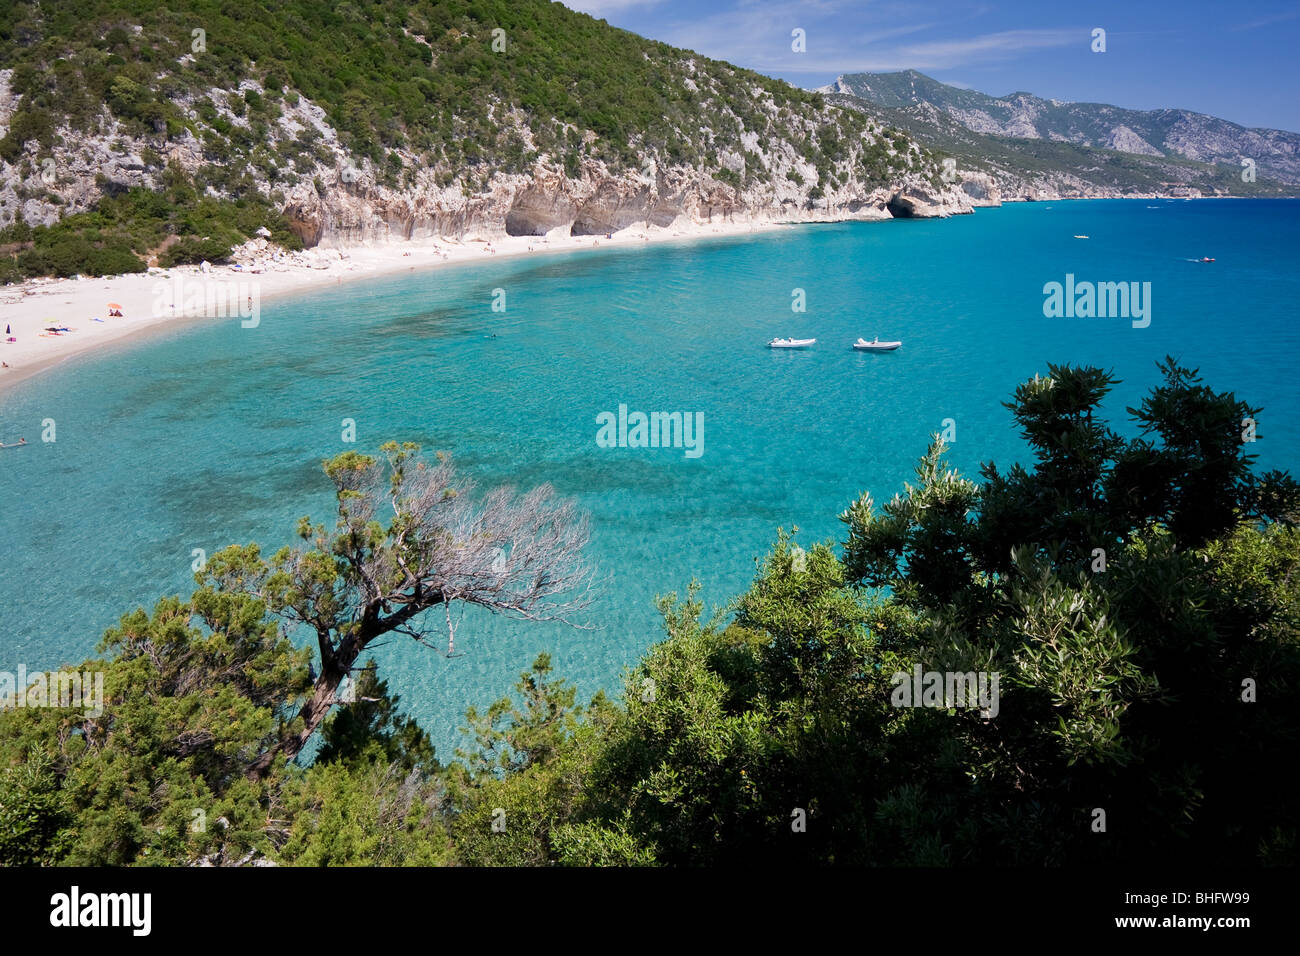 Plage Cala Luna vide, Sardaigne, île de l'Italie. Eau bleu clair dans la baie de Cala Luna, Mer Méditerranée. Banque D'Images